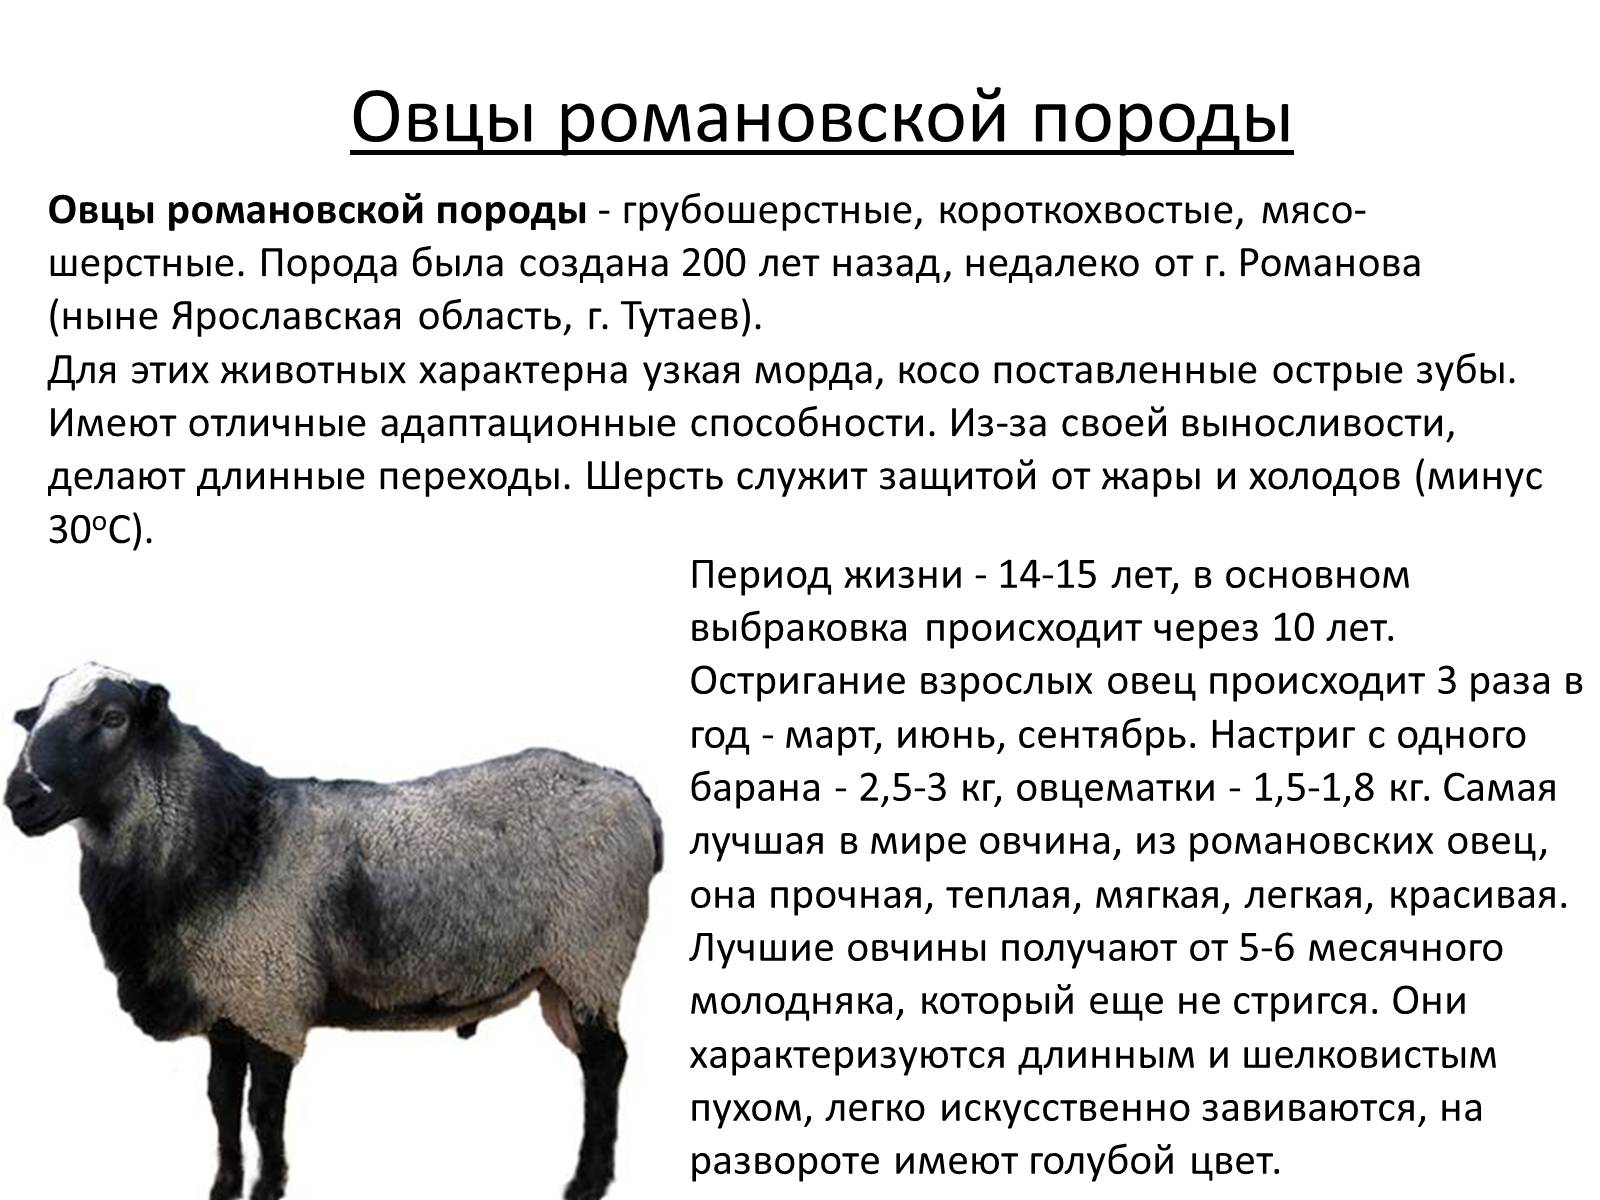 Сколько ягненок надо молока. Грубошерстные породы овец Романовская. Романовская порода овец вес. Романовская порода овец скрещивание. Романовская порода овец 3d.